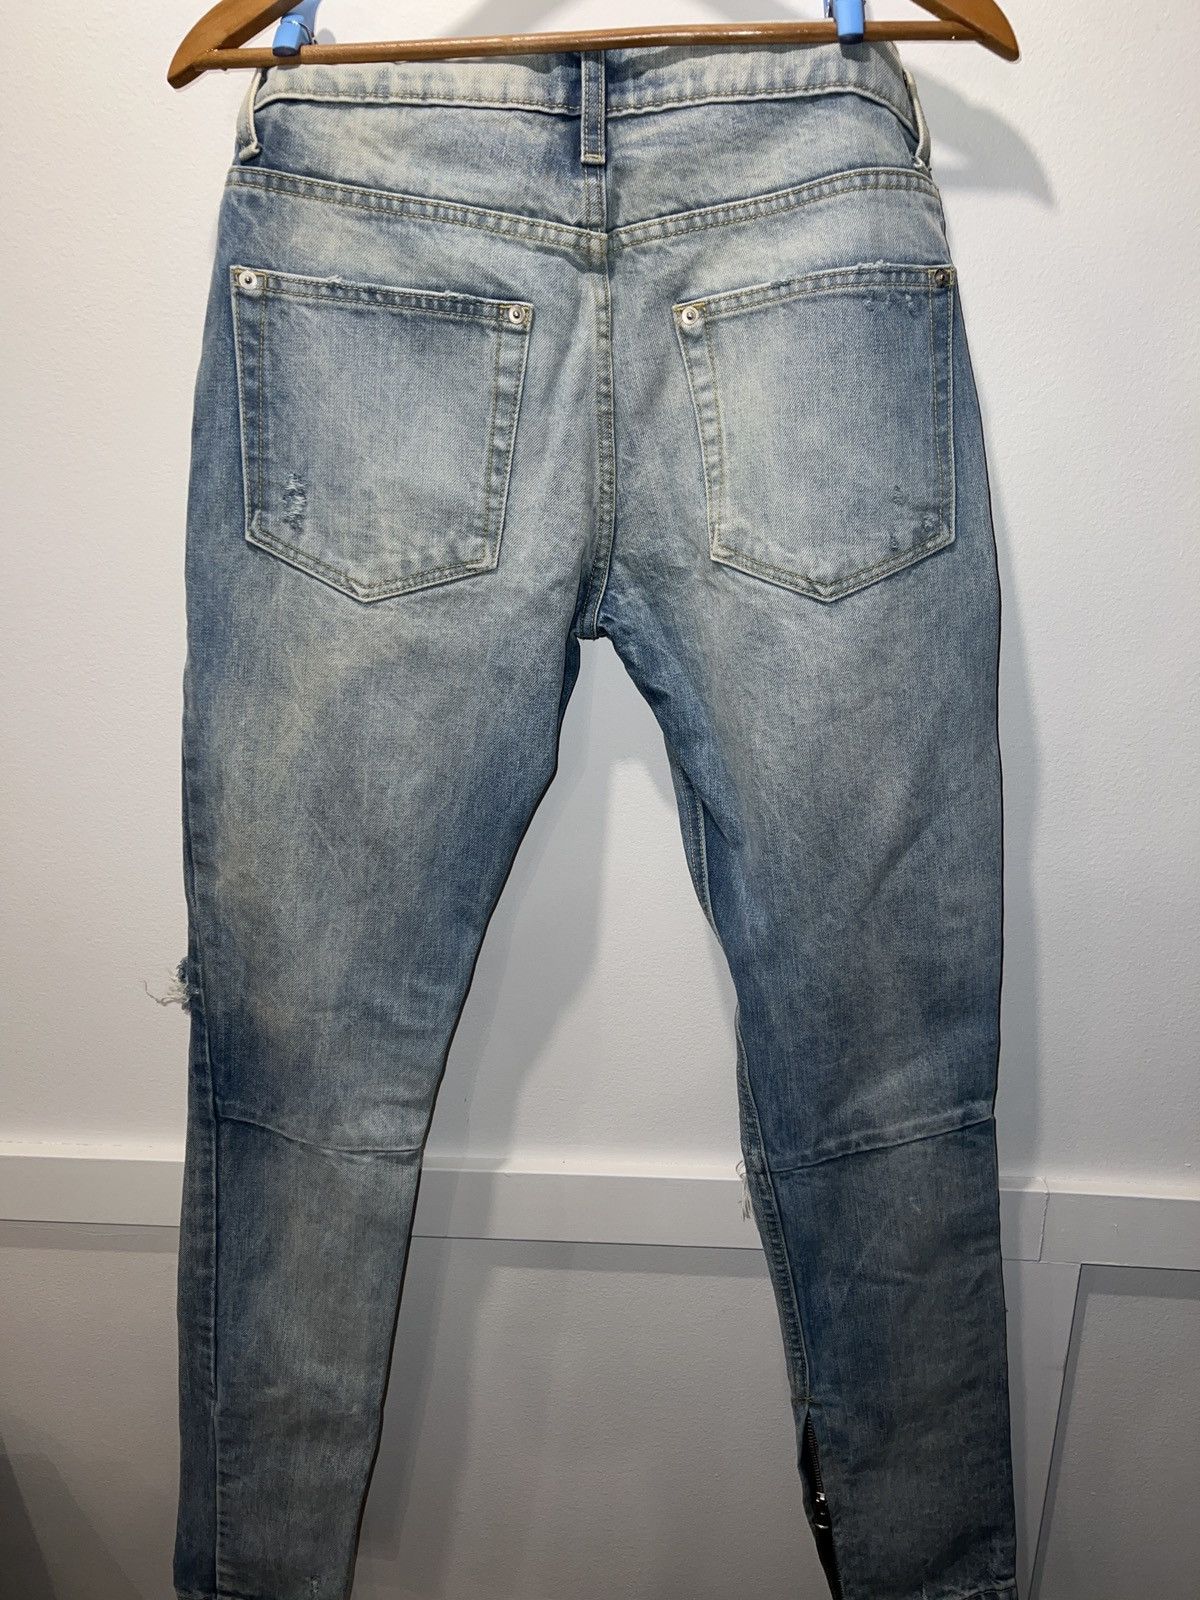 Mintcrew Mintcrew Rockstar Skinnies jeans | Grailed